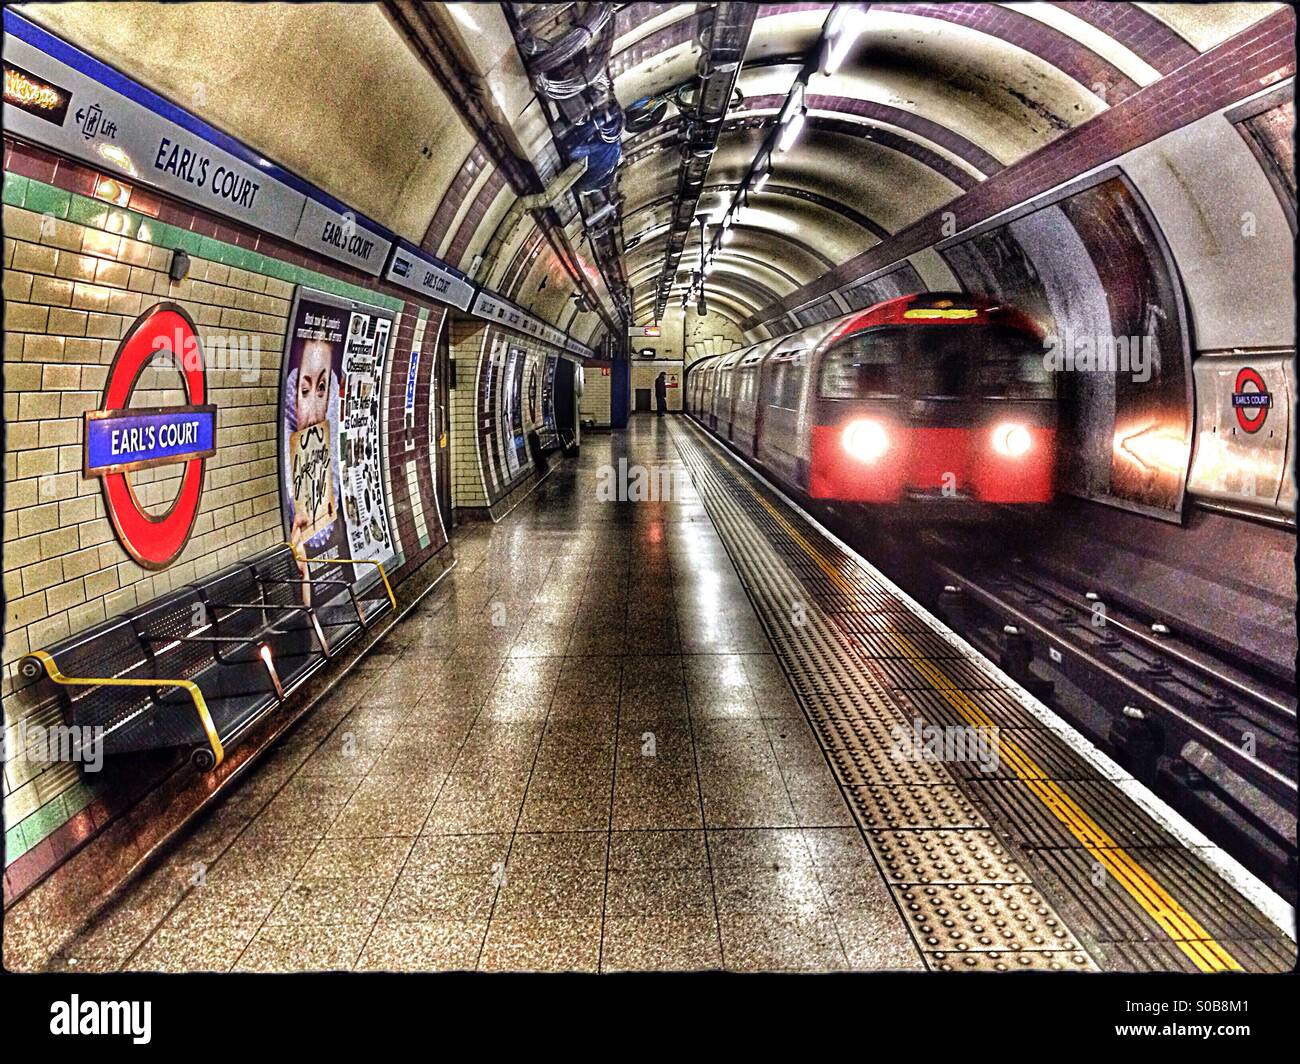 La station de métro Earl's Court intérieur, de Royal Borough de Kensington  et Chelsea, Londres, Angleterre, Royaume-Uni, Europe Photo Stock - Alamy